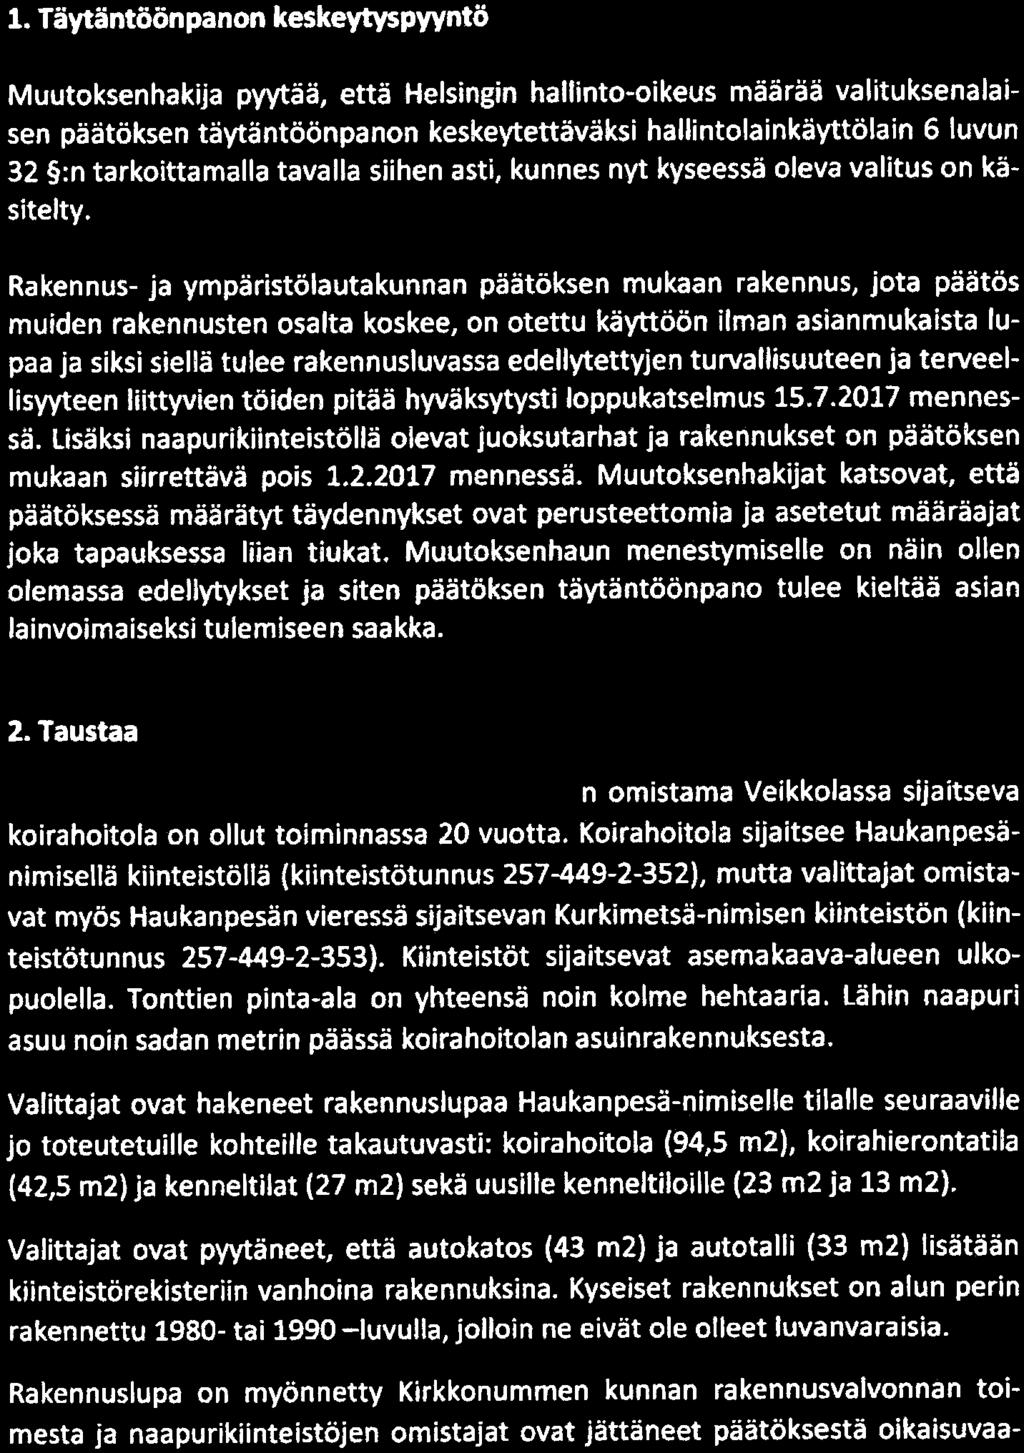 Täytäntöönpanon keskeytyspyyntö Muutoksenhakua pyytää, että Helsingin haltinto-oikeus määrää valituksenalaisen päätöksen täytäntöönpanon keskeytettäväksi hallintolainkäyttölain 6 luvun 32 :n